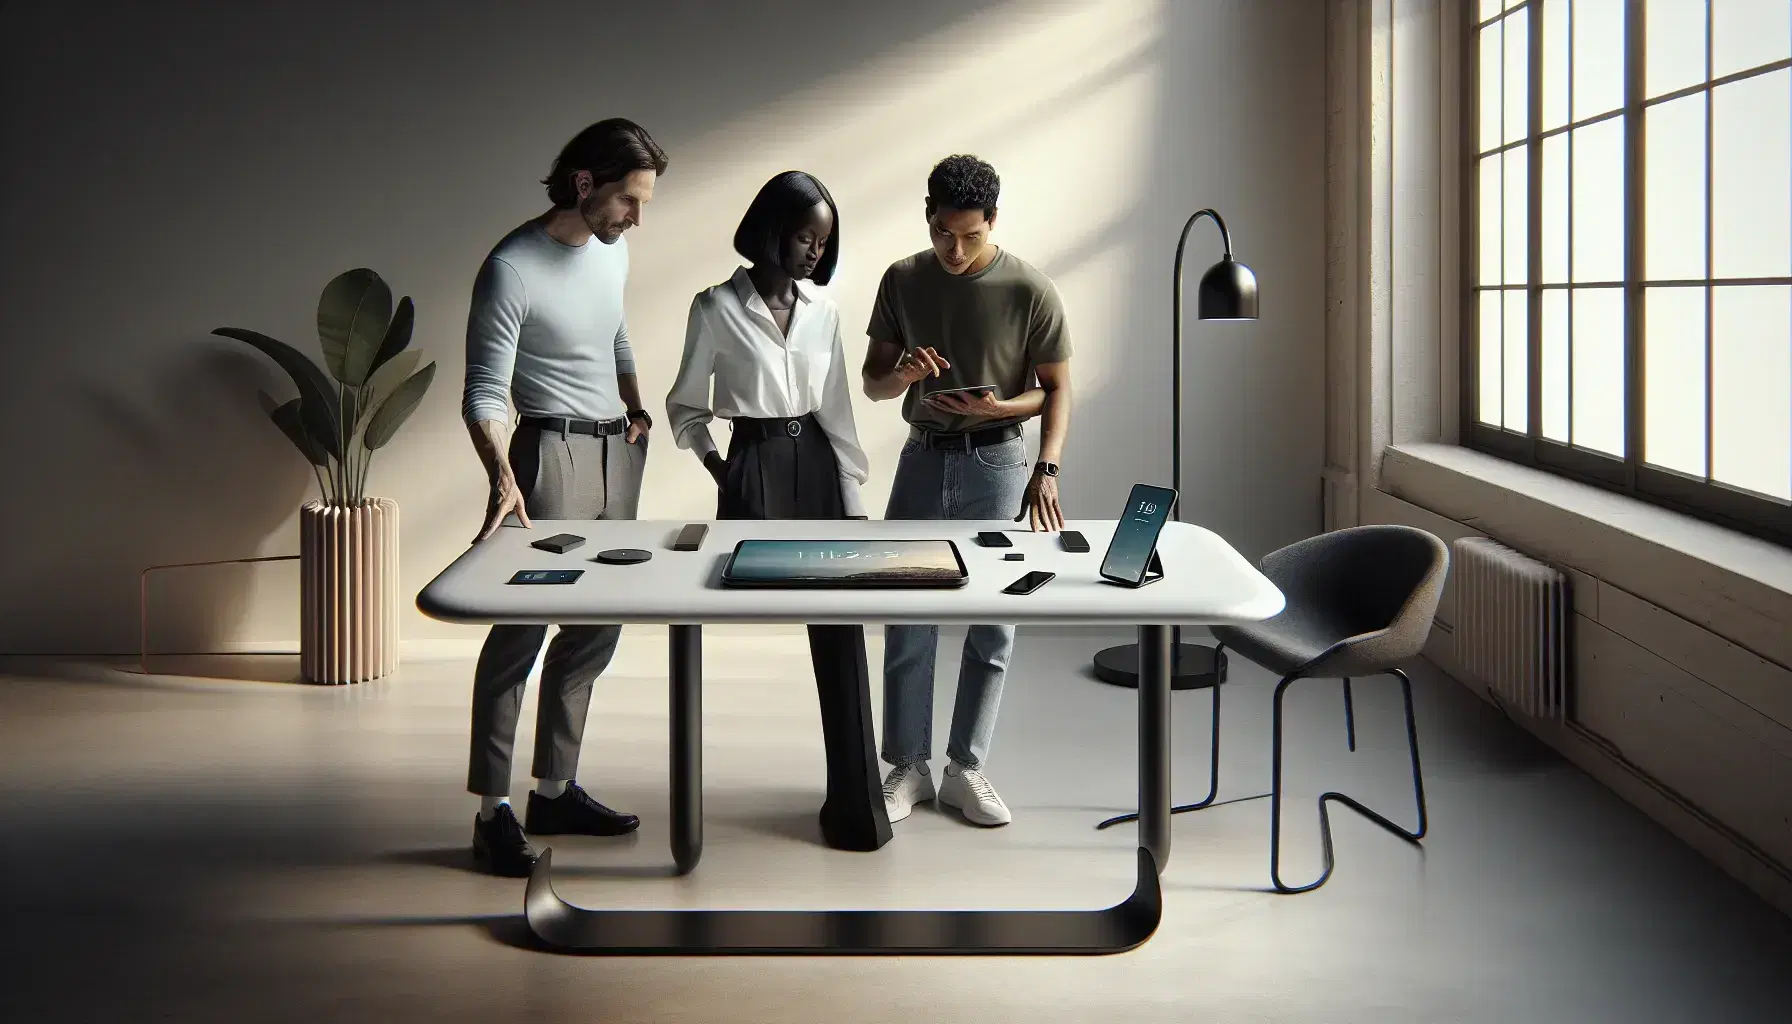 Grupo de tres profesionales colaborando en una oficina moderna con dispositivos tecnológicos sobre una mesa blanca.